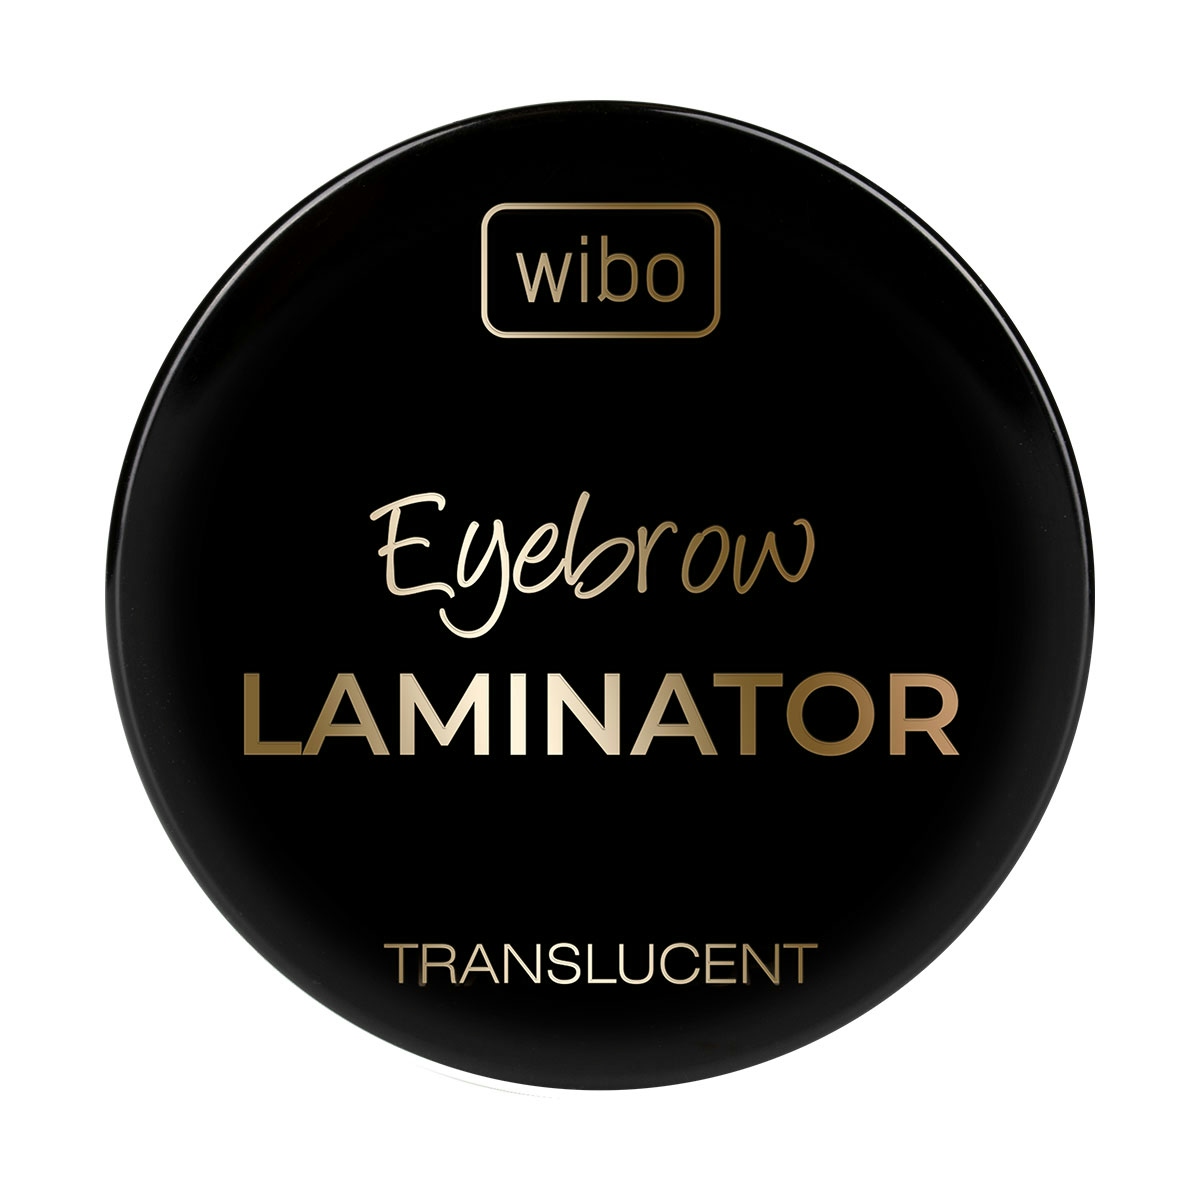 Wibo Eyebrow Laminator Translucent